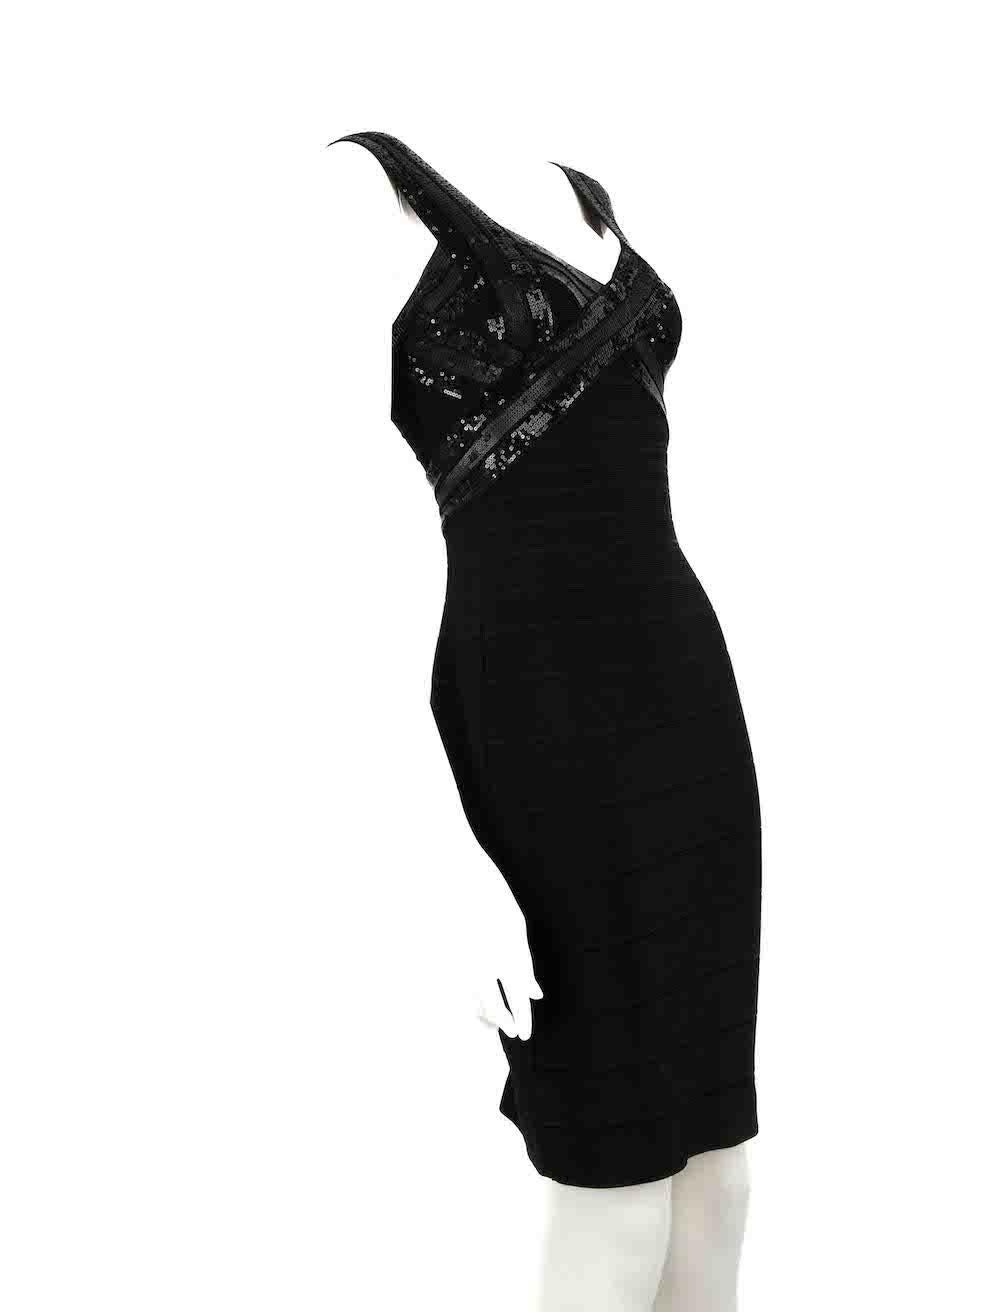 CONDIT ist sehr gut. Kaum sichtbare Abnutzungserscheinungen am Kleid sind bei diesem gebrauchten Herve Leger Designer-Wiederverkaufsartikel zu erkennen.
 
 
 
 Einzelheiten
 
 
 Schwarz
 
 Rayon
 
 Kleid
 
 Bodycon
 
 Mini
 
 V-Ausschnitt
 
